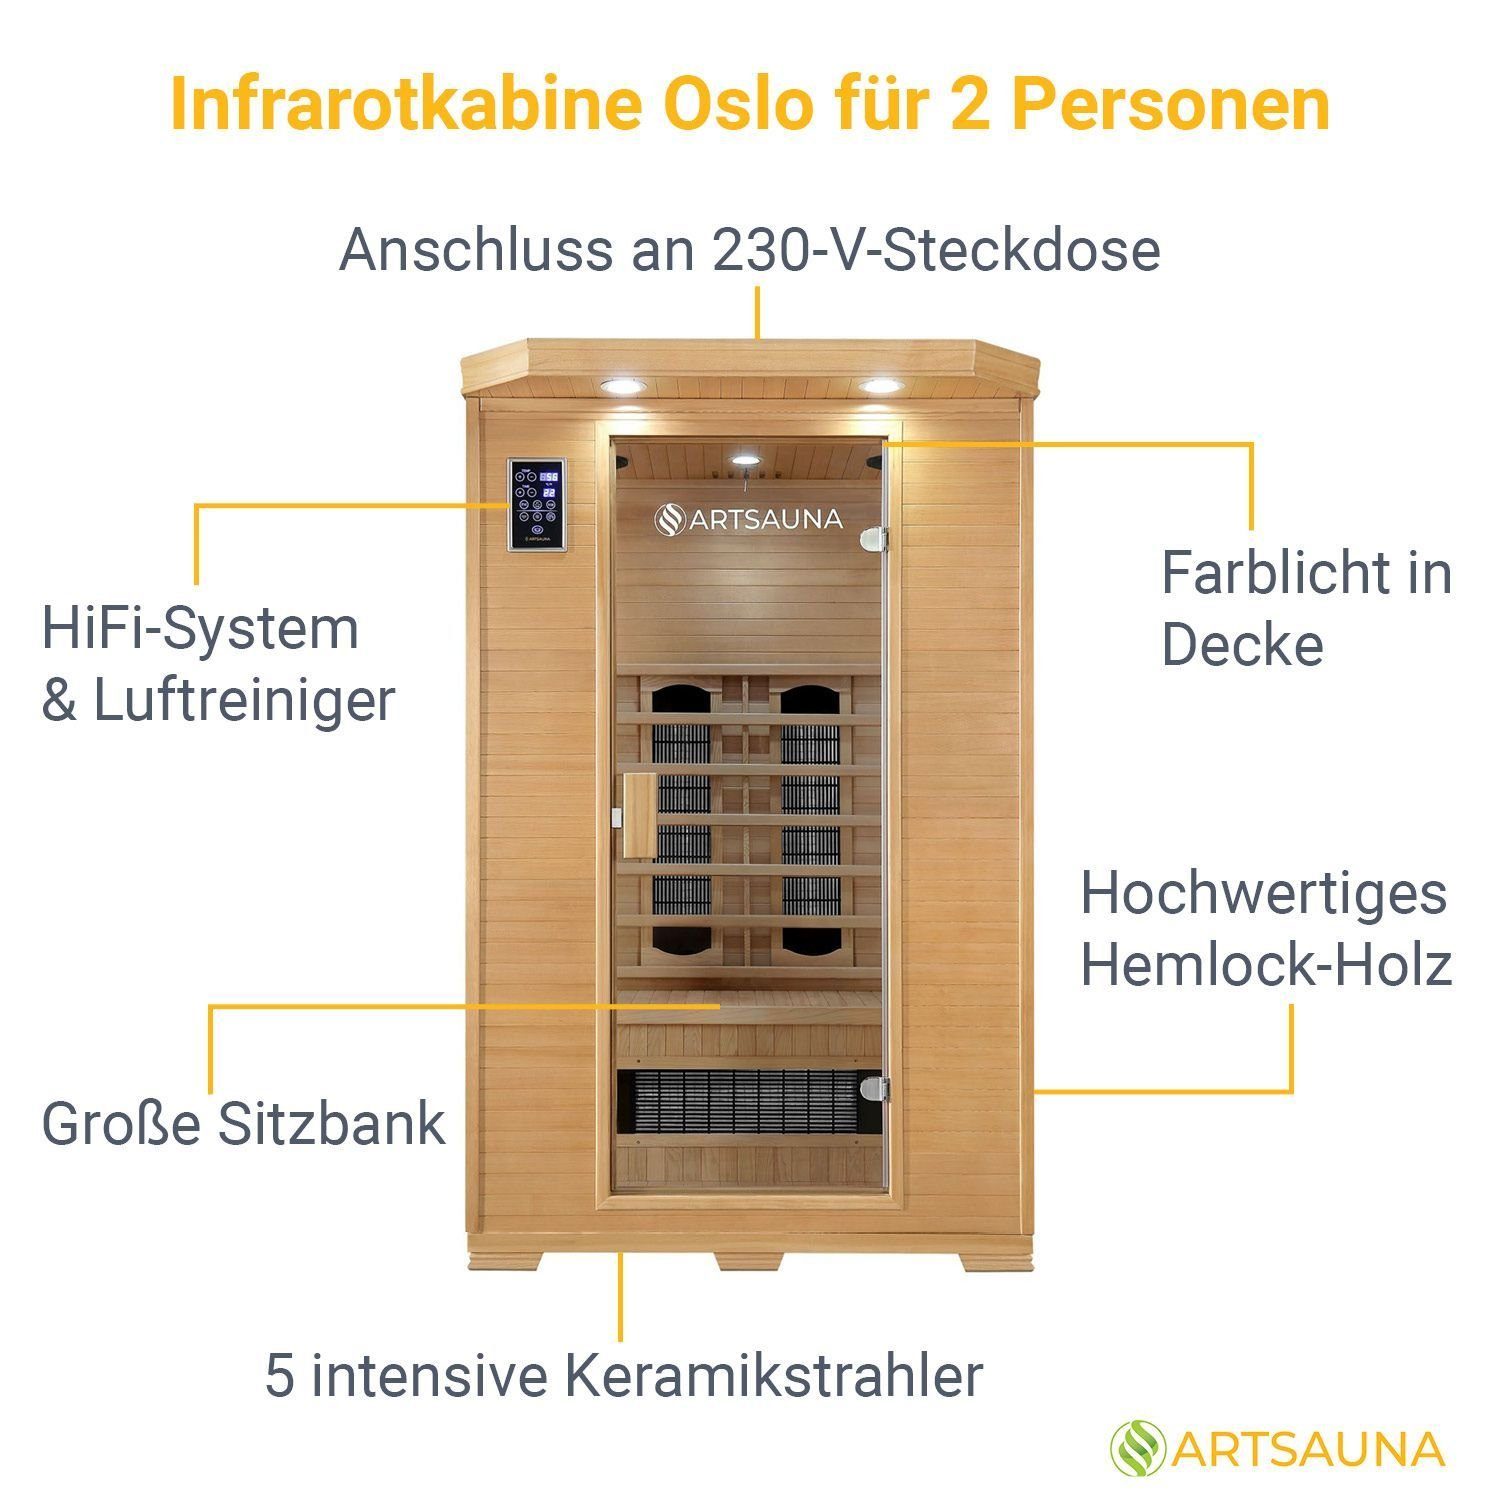 Personen, Infrarotkabine 2 Oslo, HiFi-System, Ionisator, Artsauna LED-Farblicht Hemlock-Holz, für